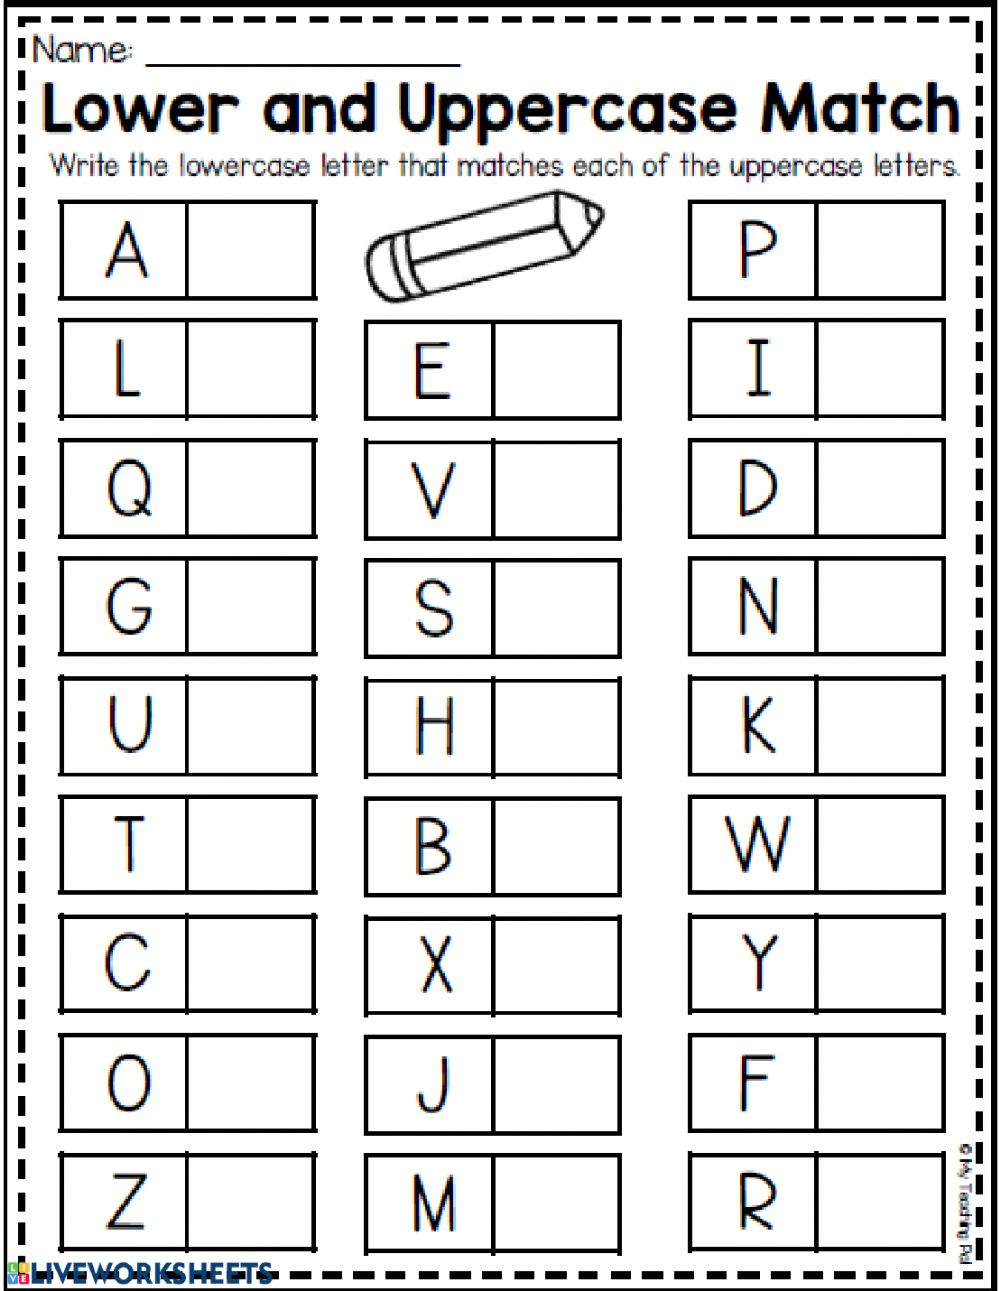 kindergarten-worksheets-match-upper-case-and-lower-case-letters-2